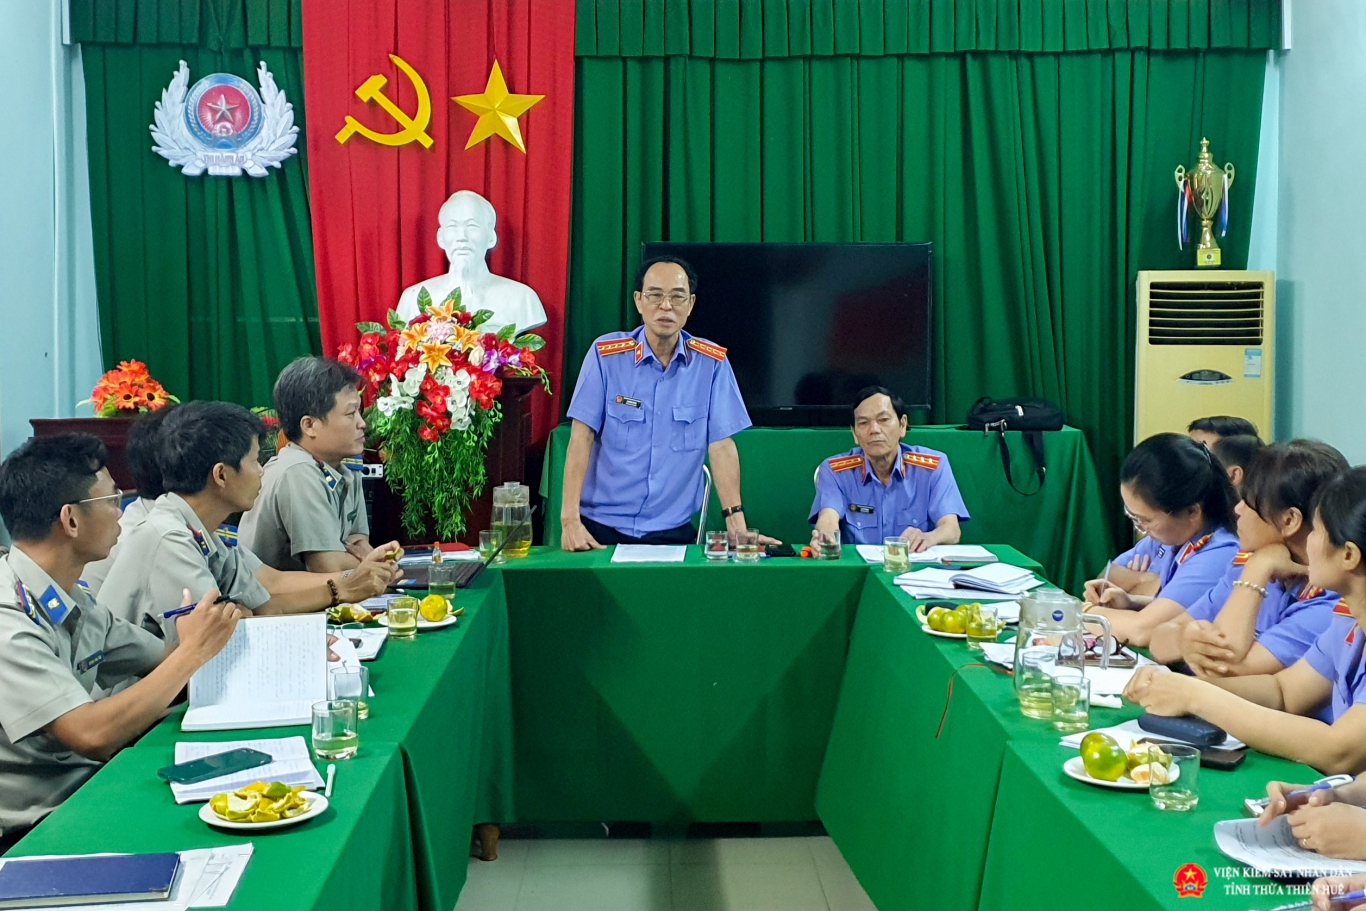 Đồng chí Lại Đình Hùng, Phó Viện trưởng Viện kiểm sát nhân dân tỉnh Thừa Thiên Huế phát biểu tại buổi Kết luận trực tiếp kiểm sát